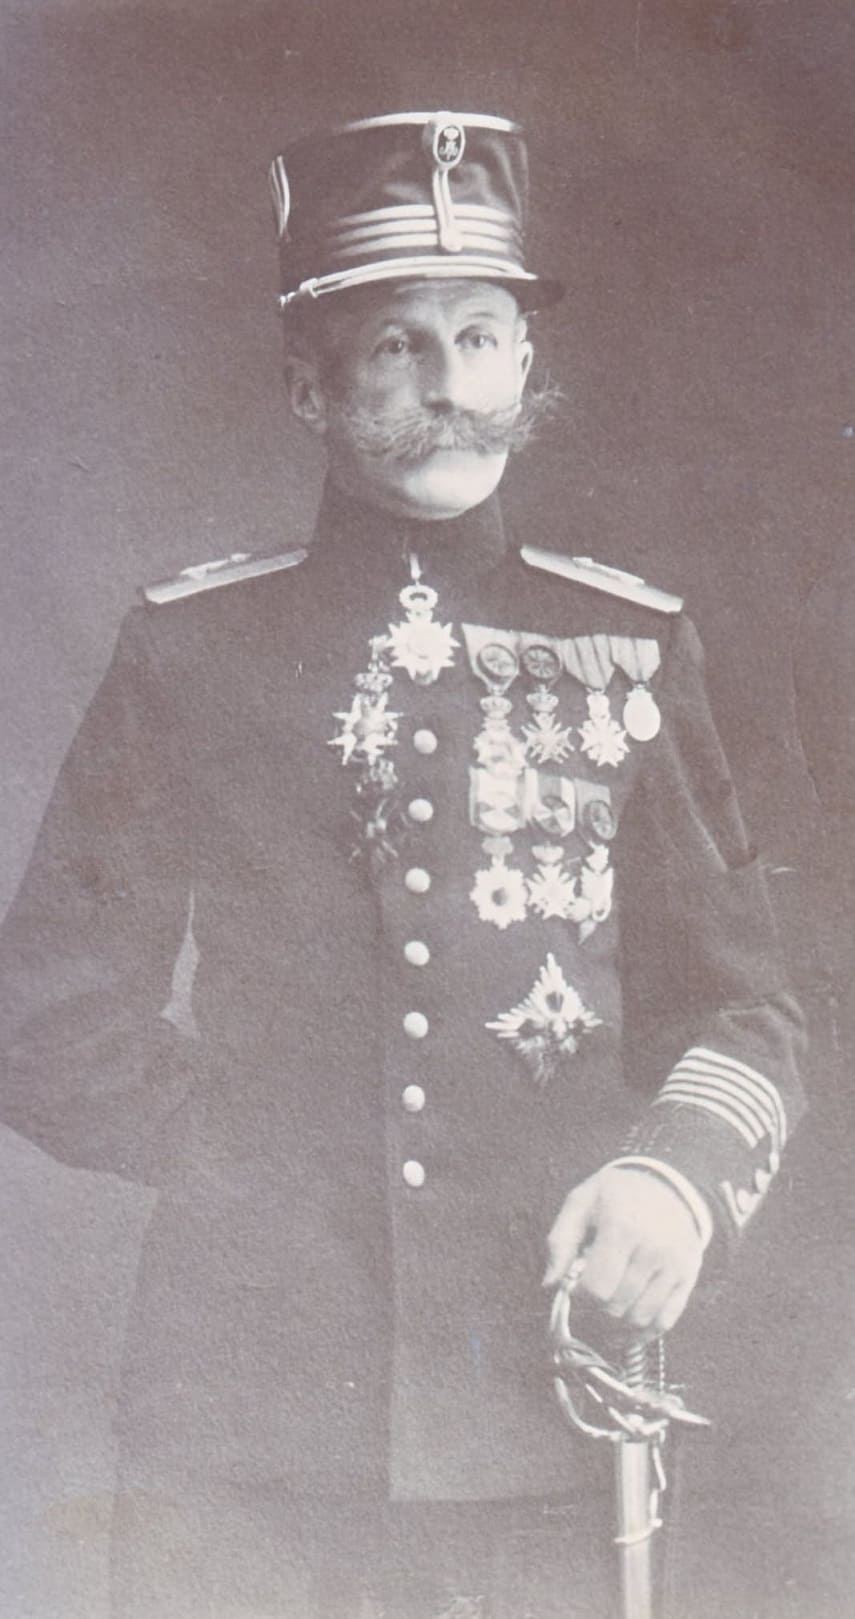 General de Bernard de Fauconval de Dents 1857-1922.jpg